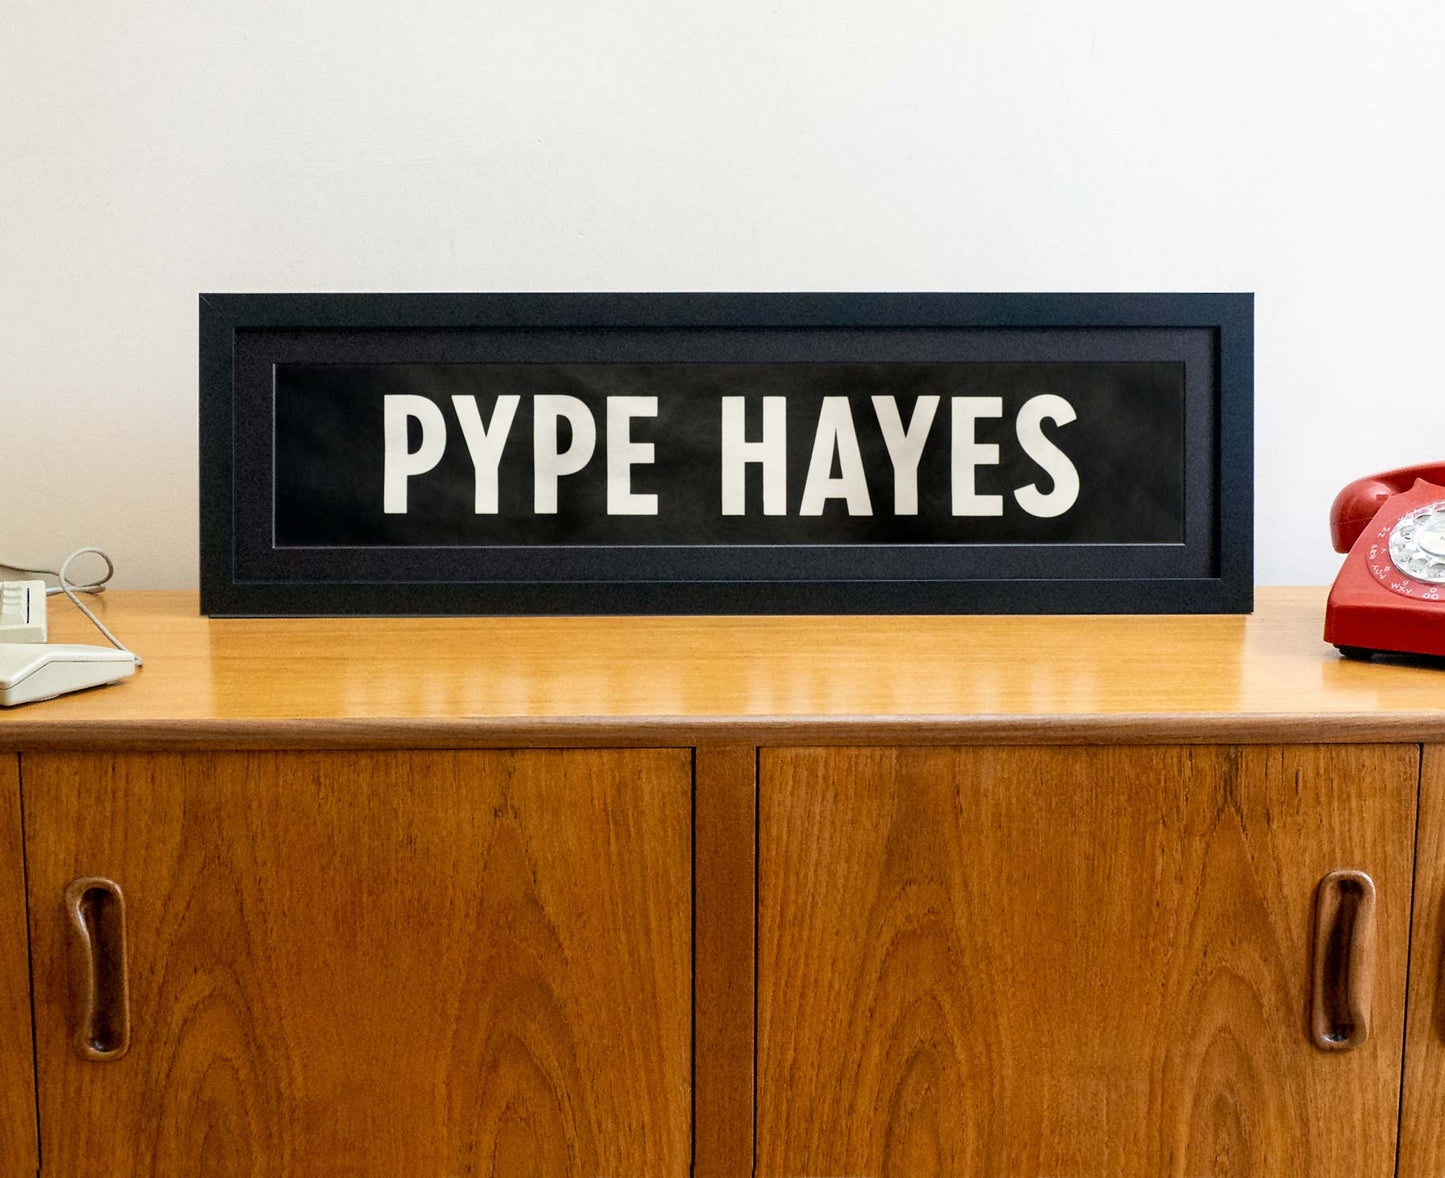 Pype Hayes 1980s framed original bus blind